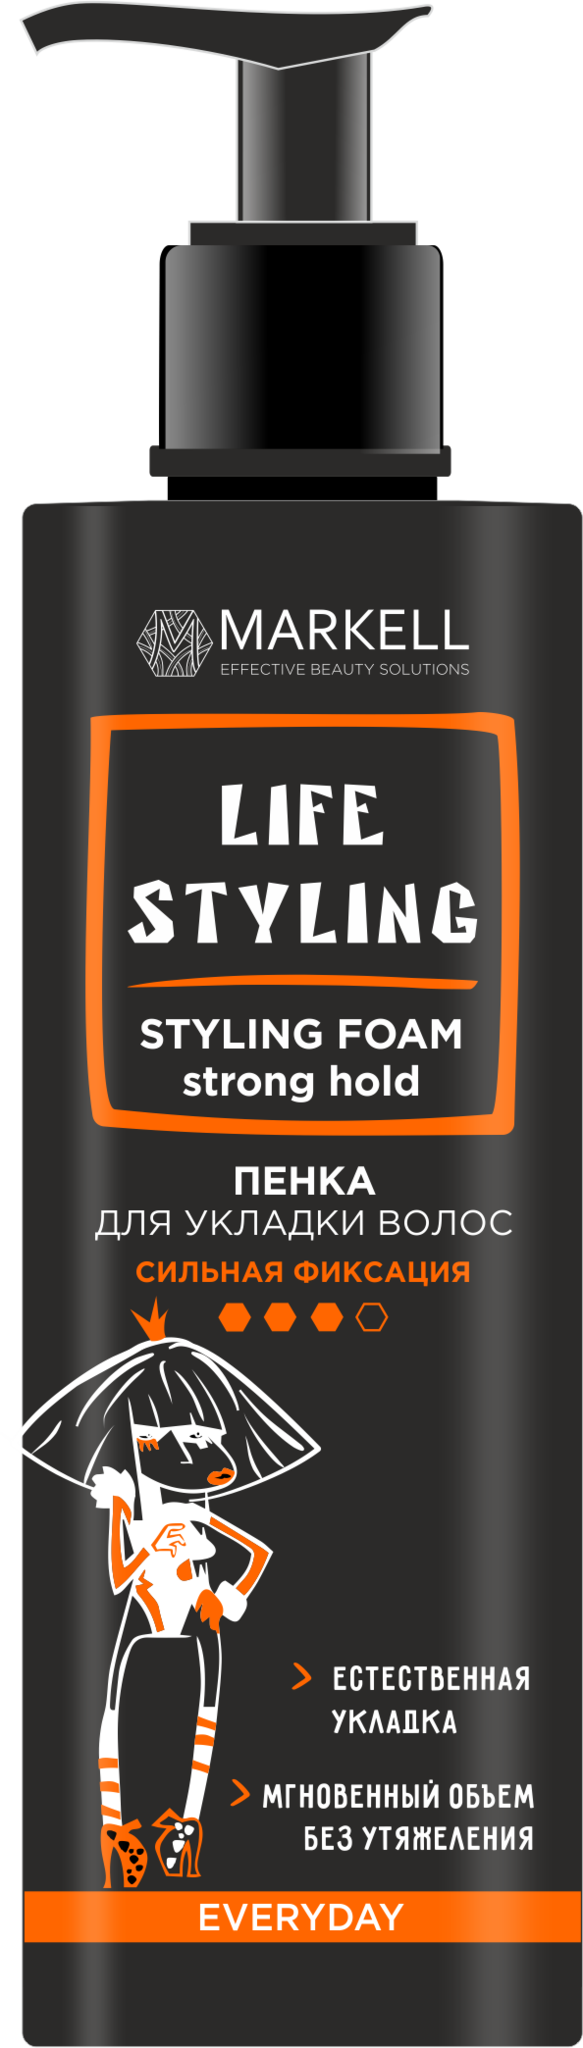 MARKELL Life Styling Пенка для укладки волос сильная фиксация 195мл